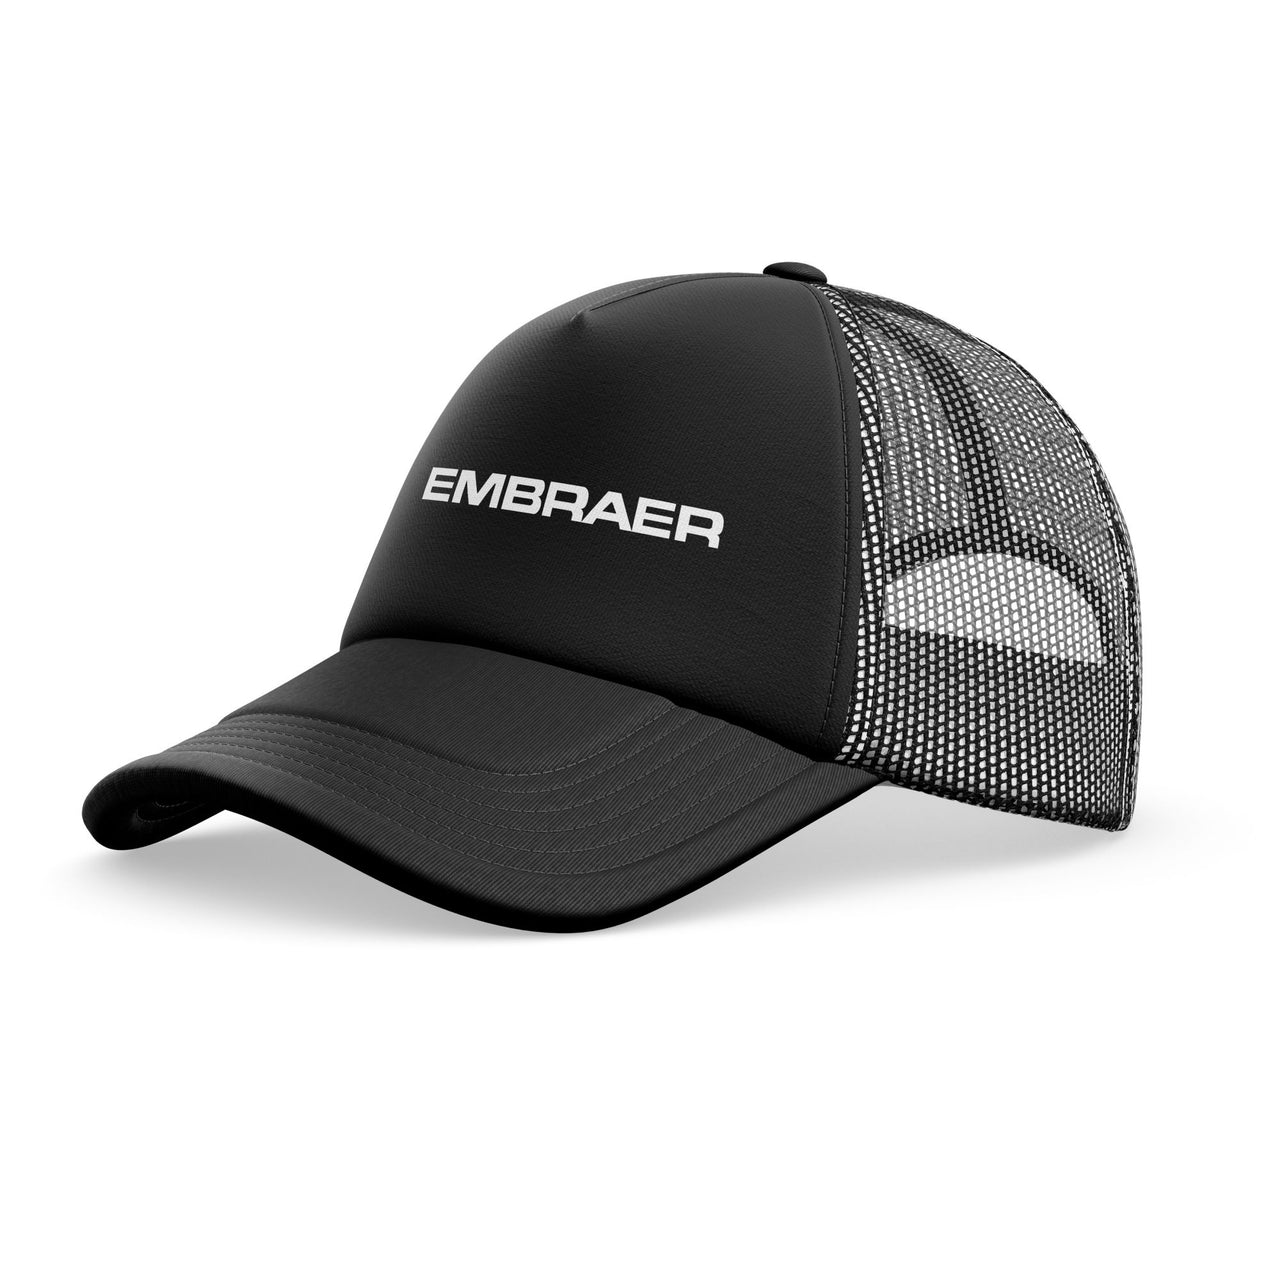 Embraer & Text Designed Trucker Caps & Hats